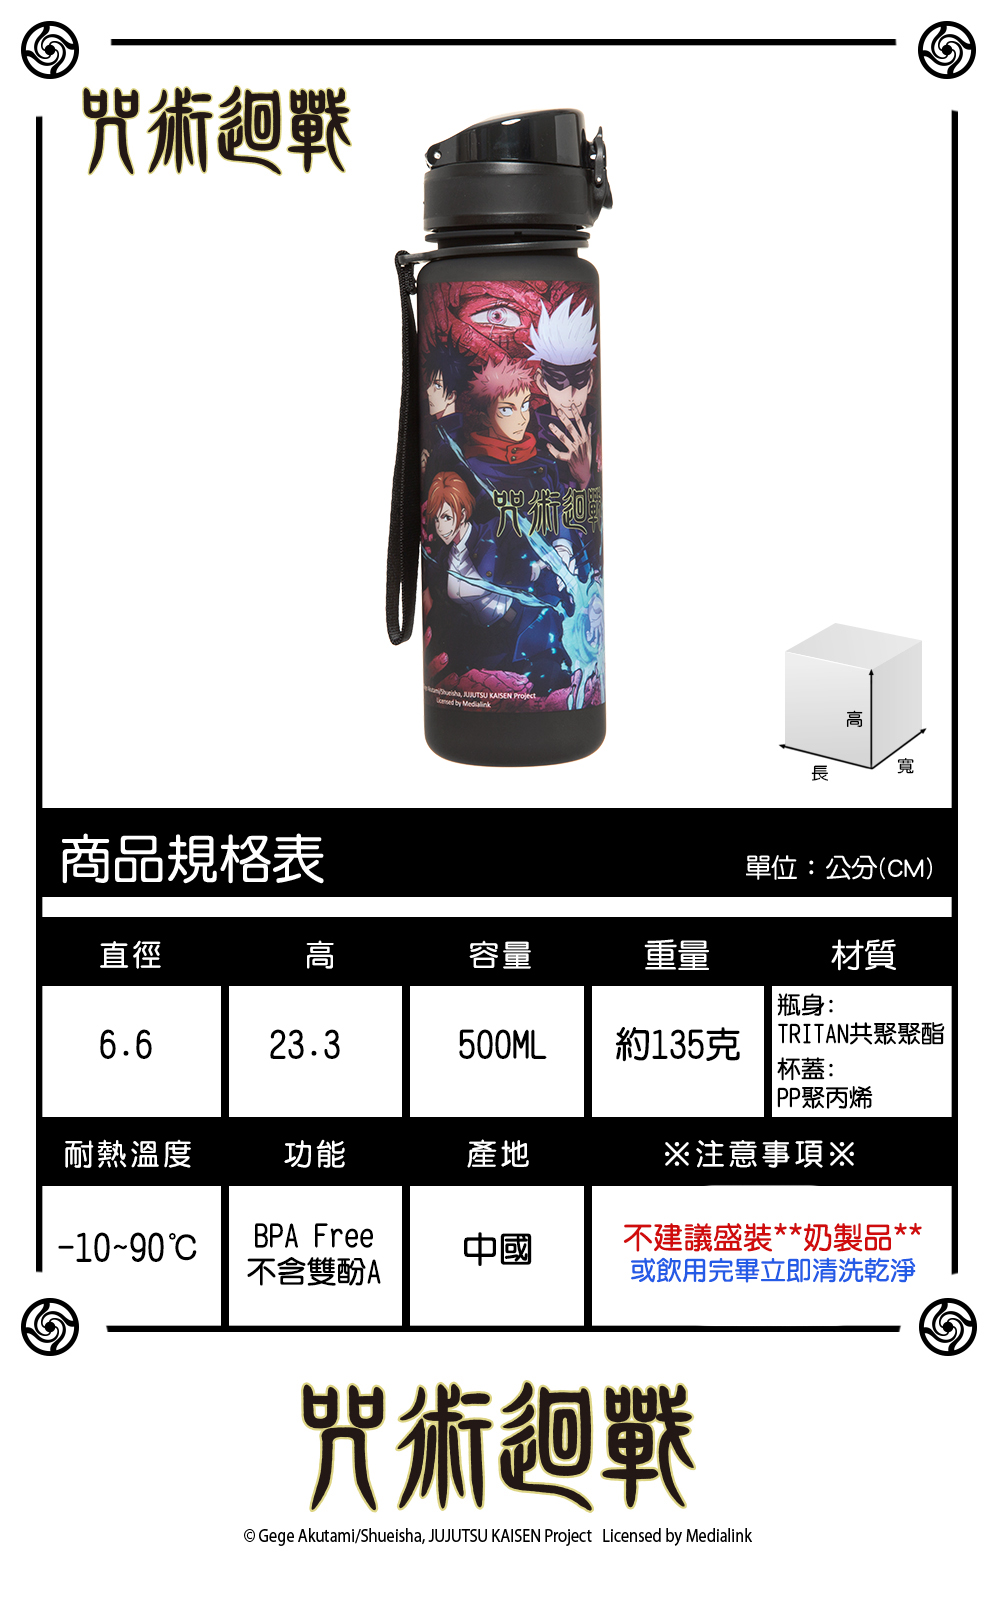 《新品》【咒術迴戰】咒術迴戰水杯(500ML)-黑色 JK21-A4-11BK